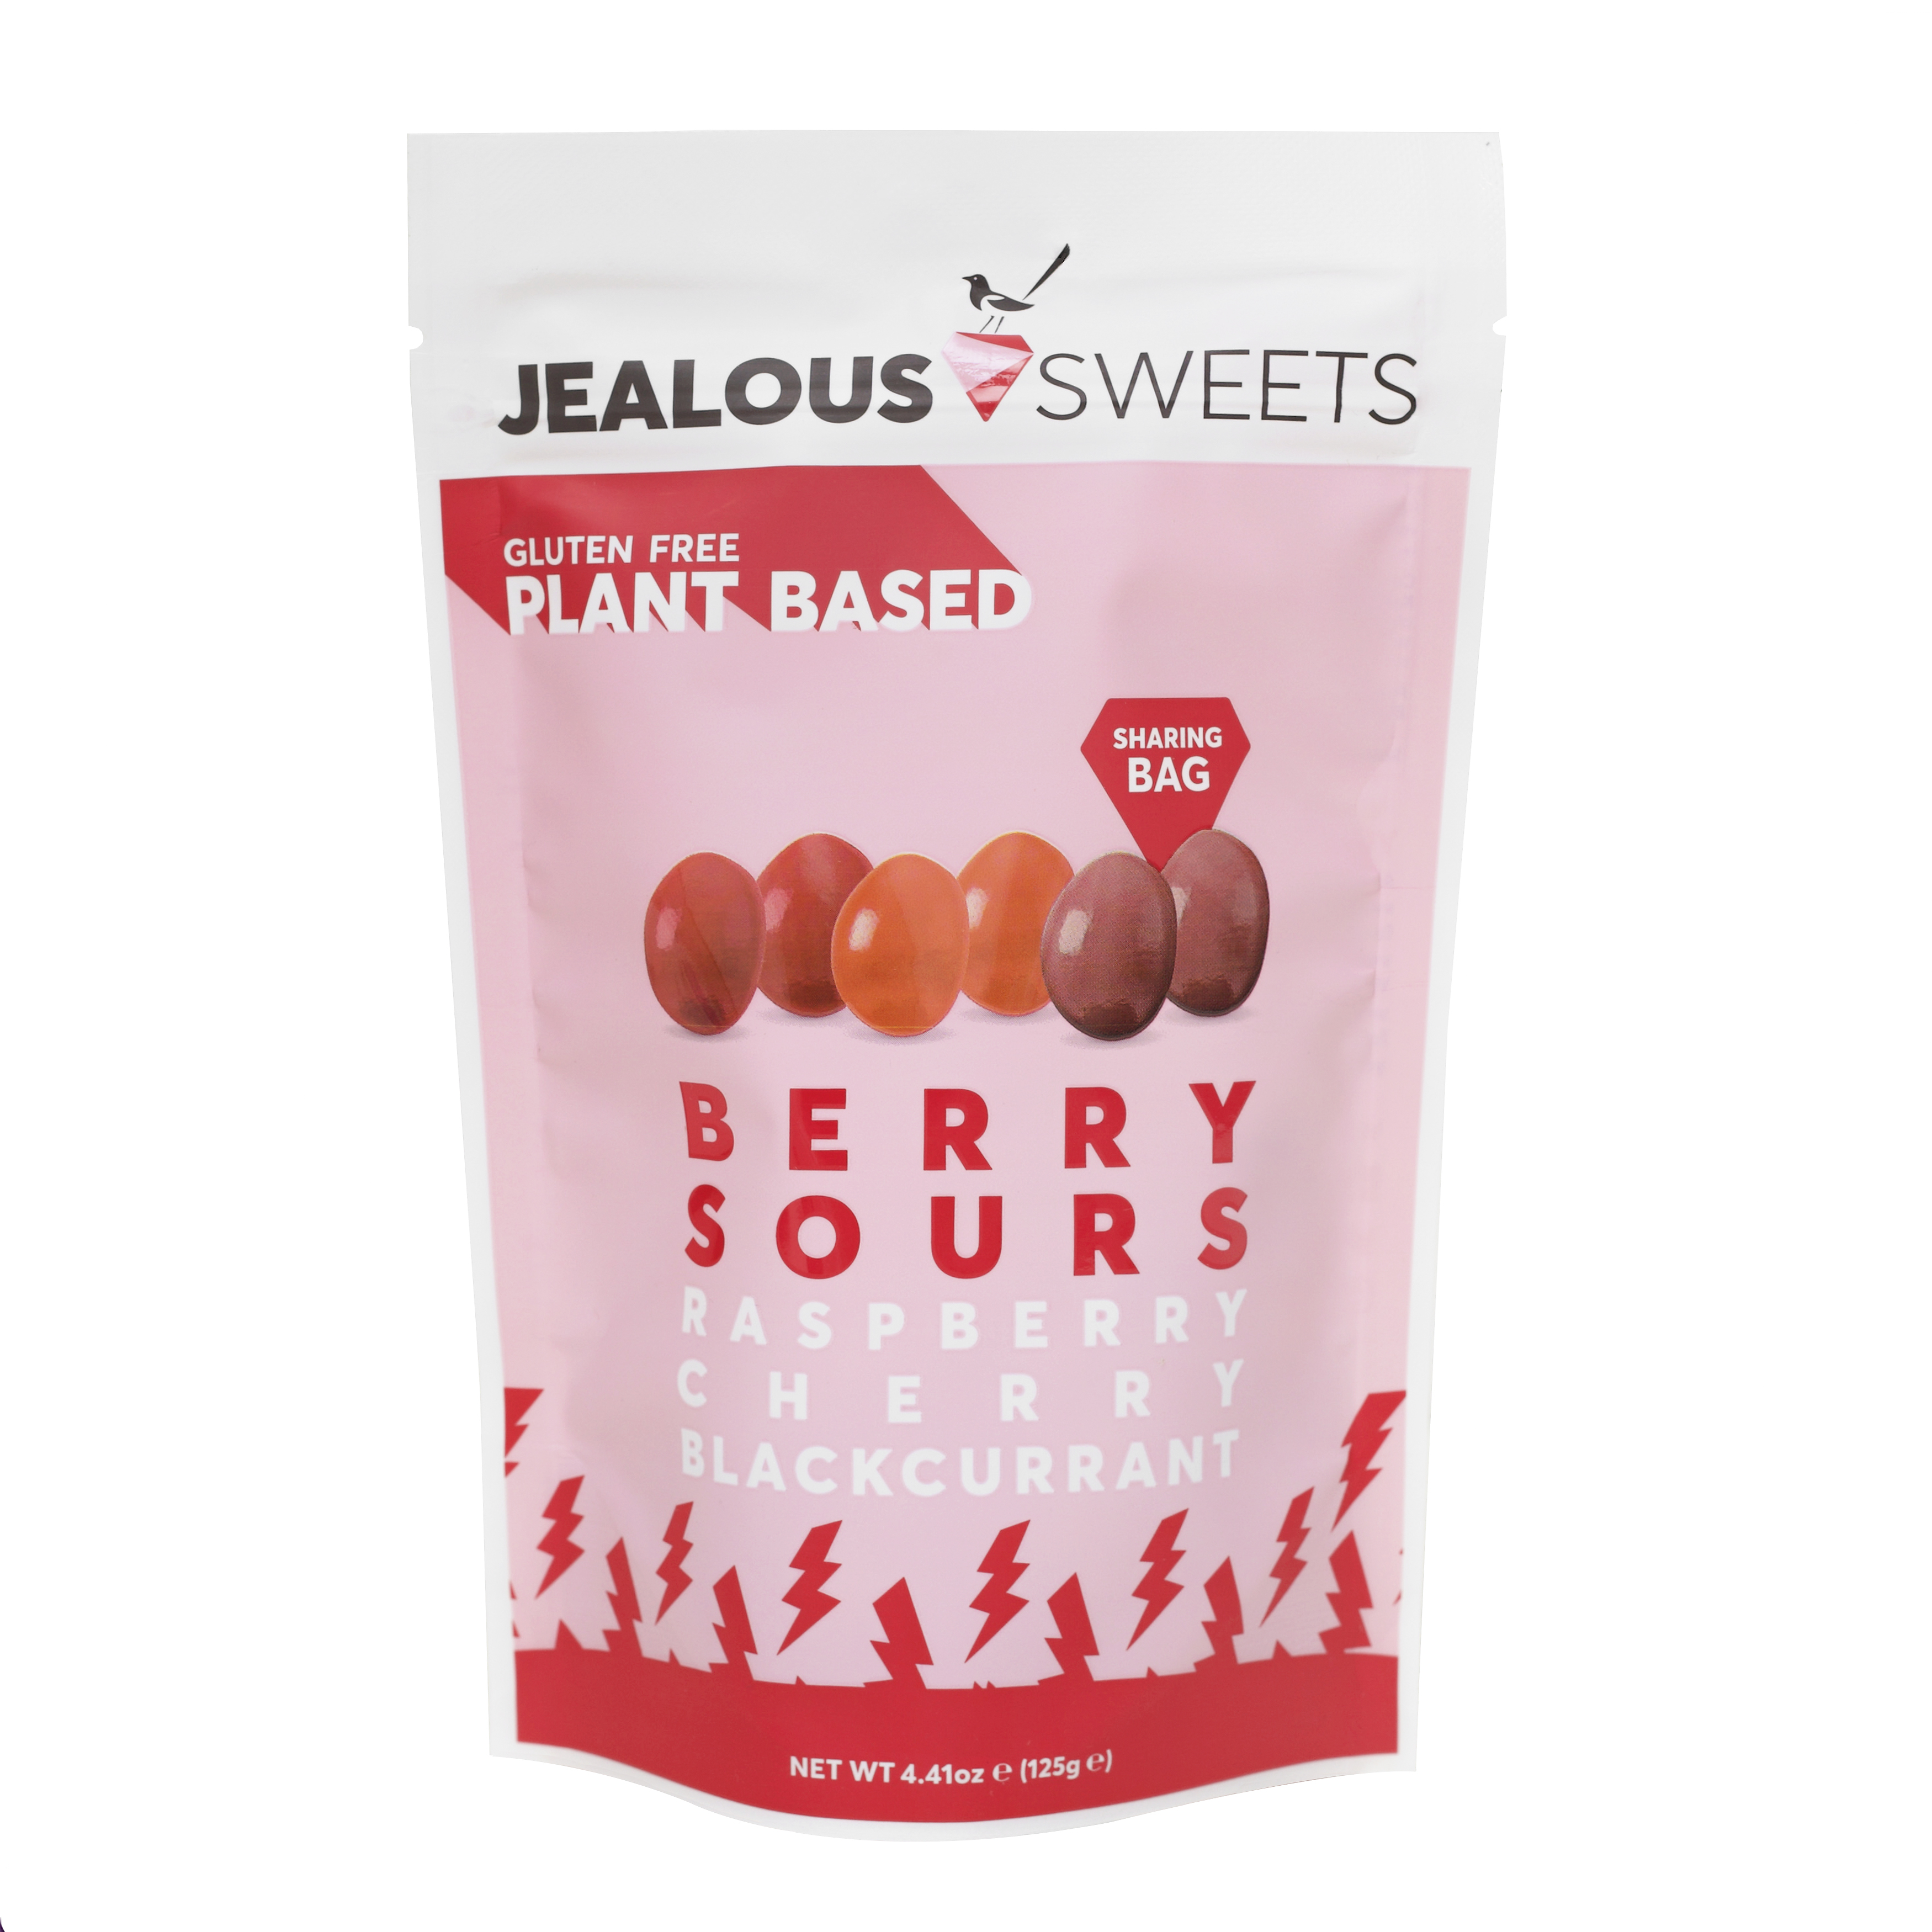 Jealous Sweets Berry Sours 7 units per case 4.5 oz